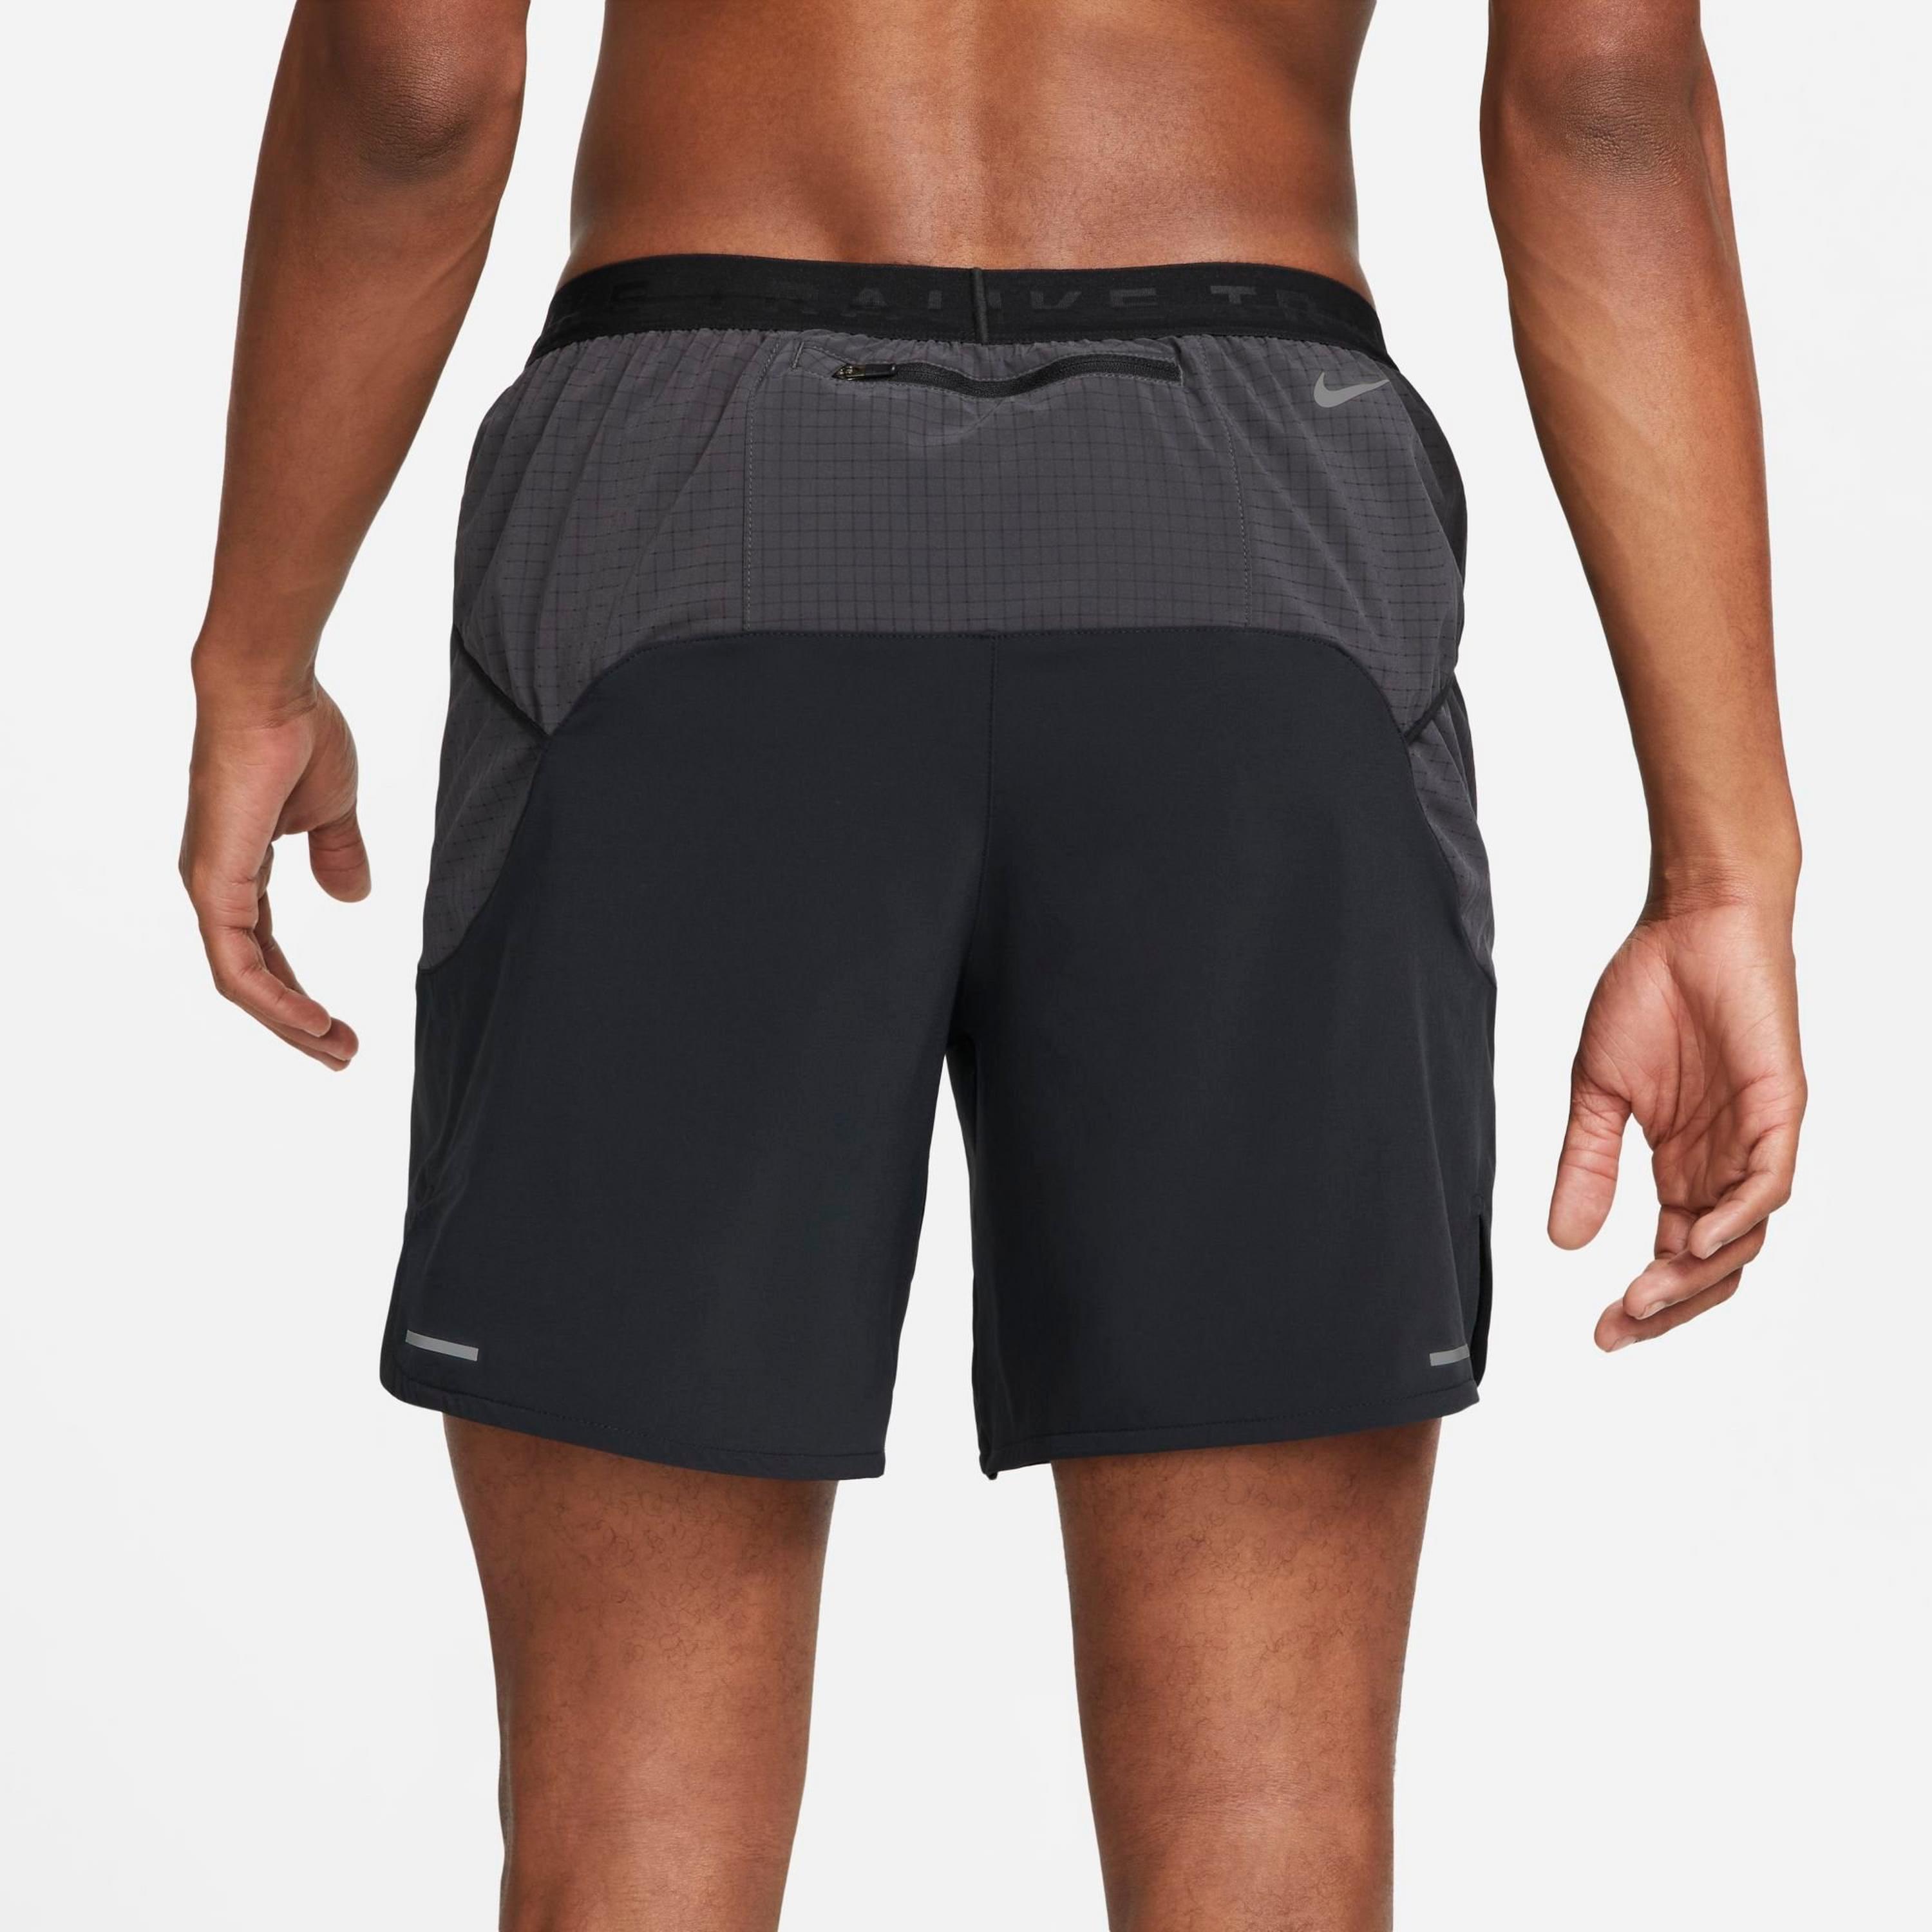 Nike, Shorts, Nike Trail Drifit Lava Loops Running 2 Tights Mens Size Xxl  Black Hiking New